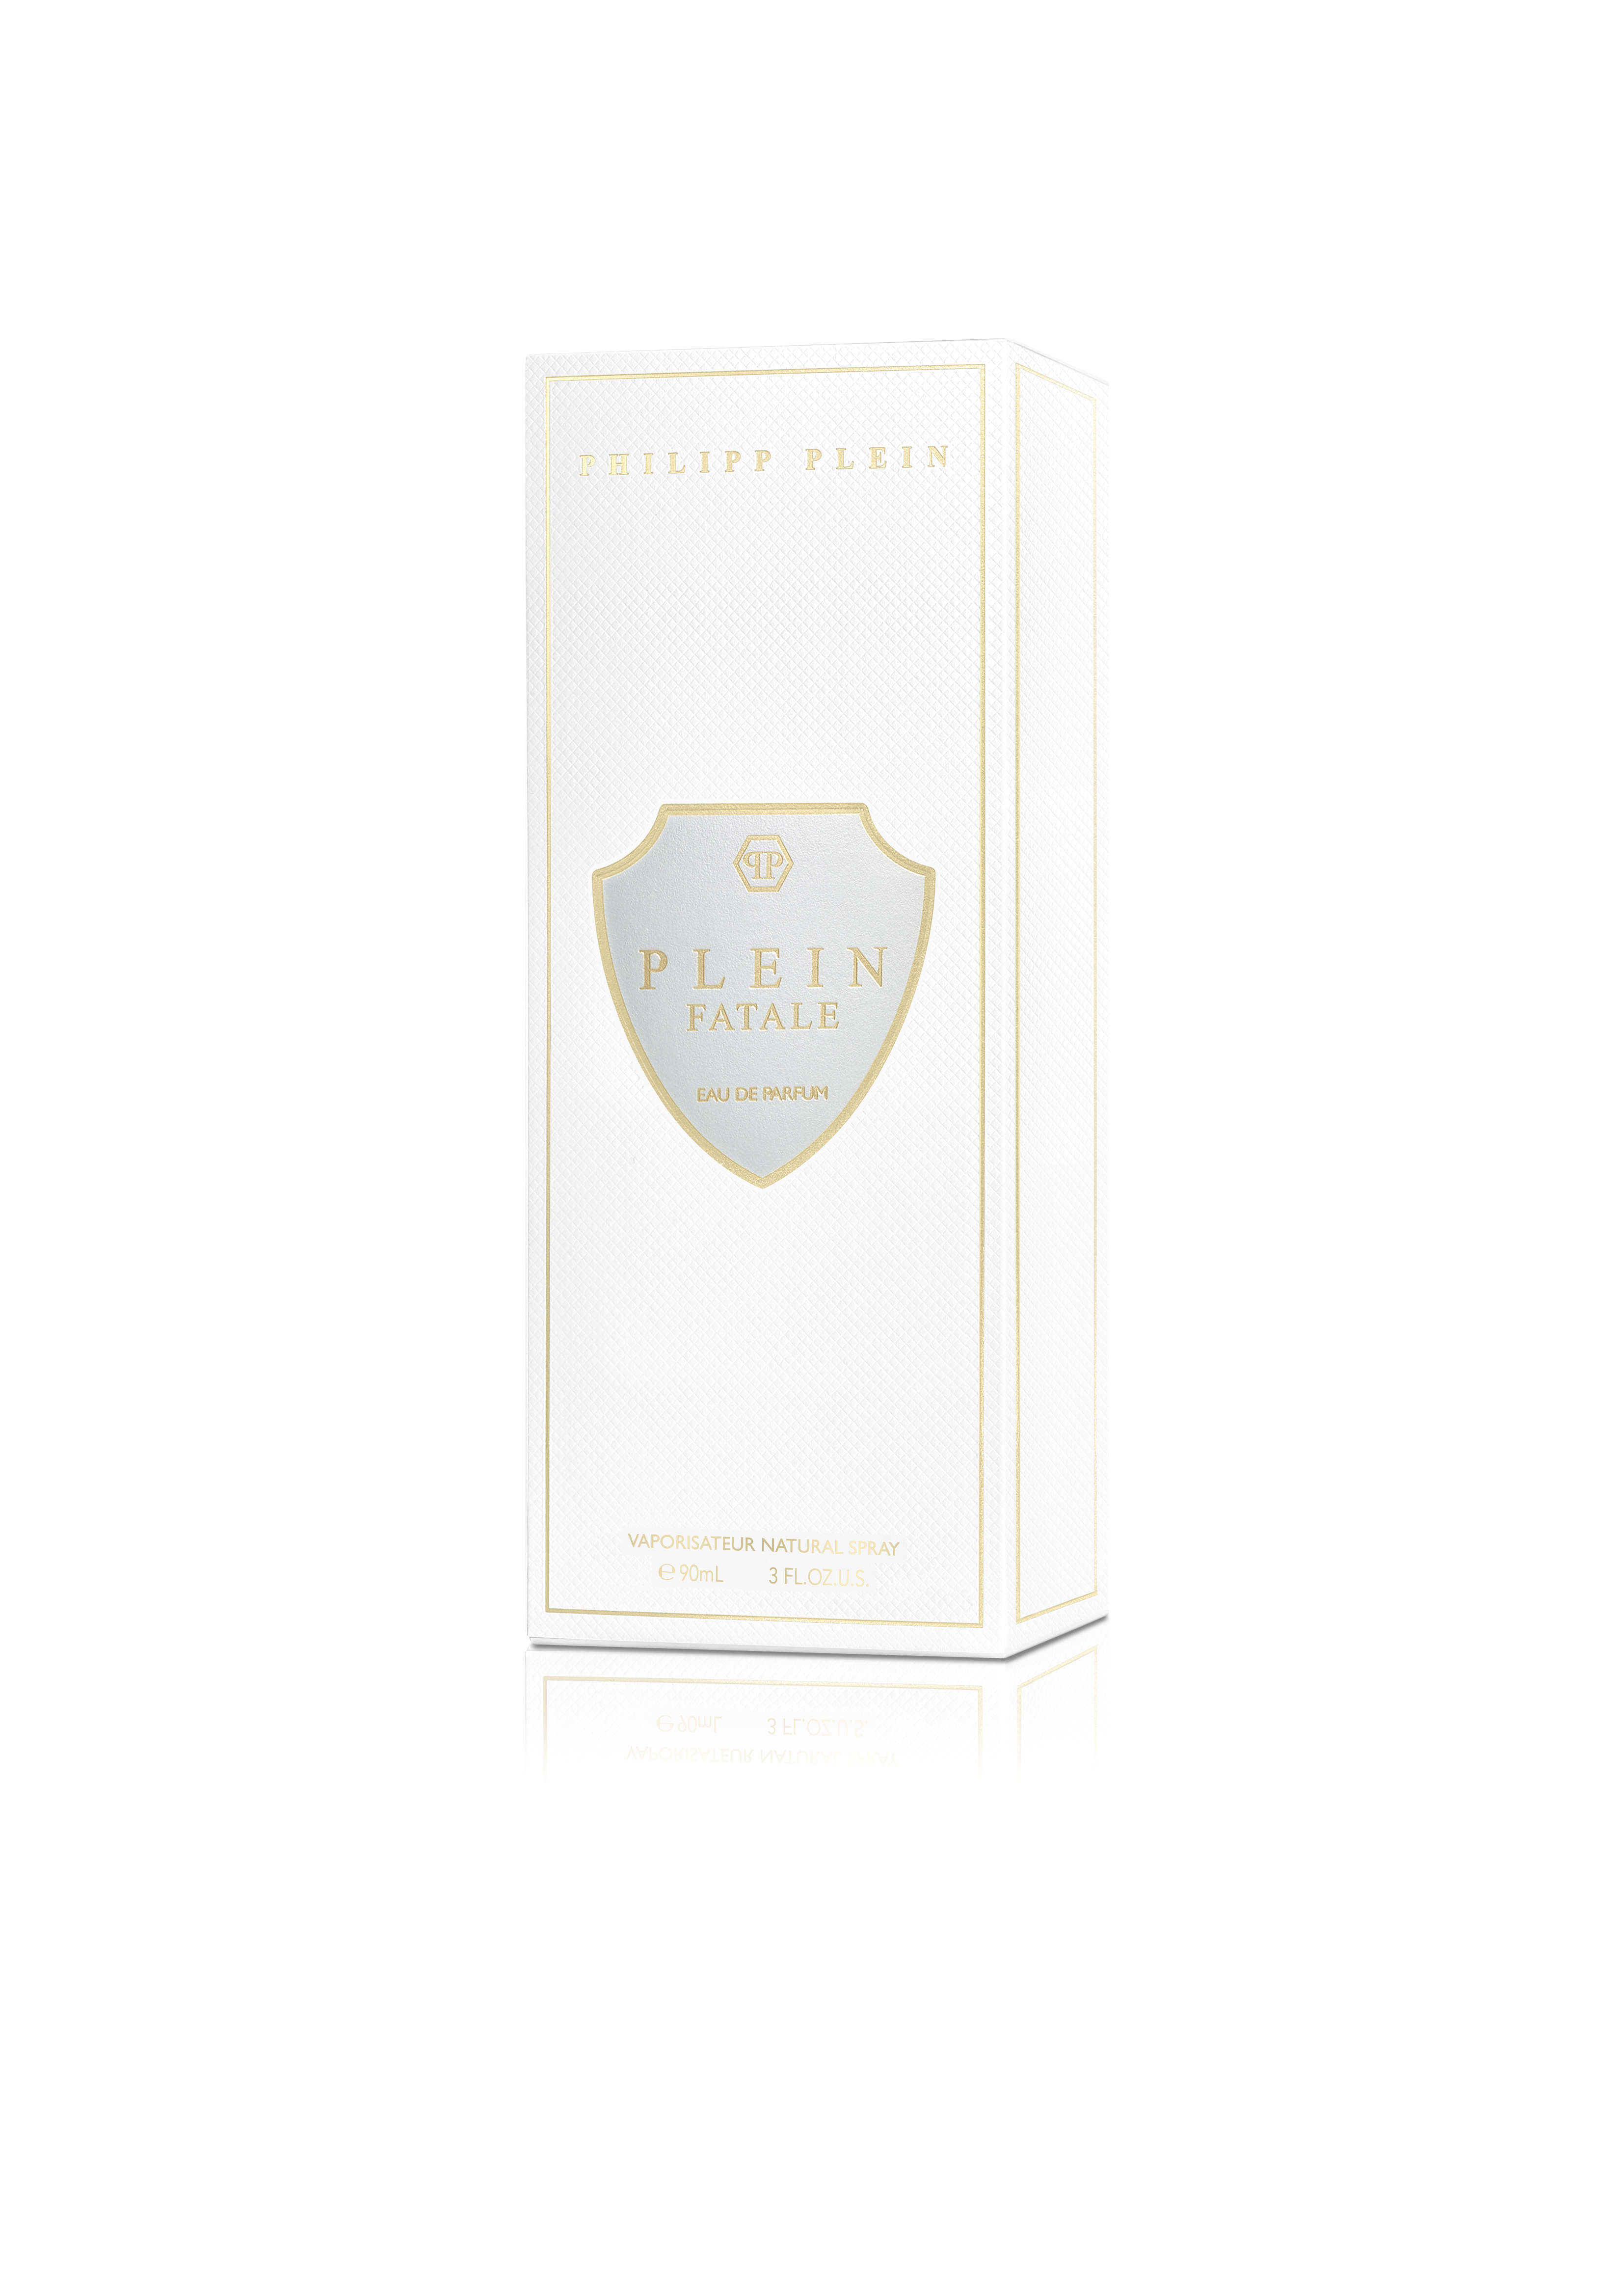 Plein Fatale Eau de Parfum 90ml | Philipp Plein Outlet